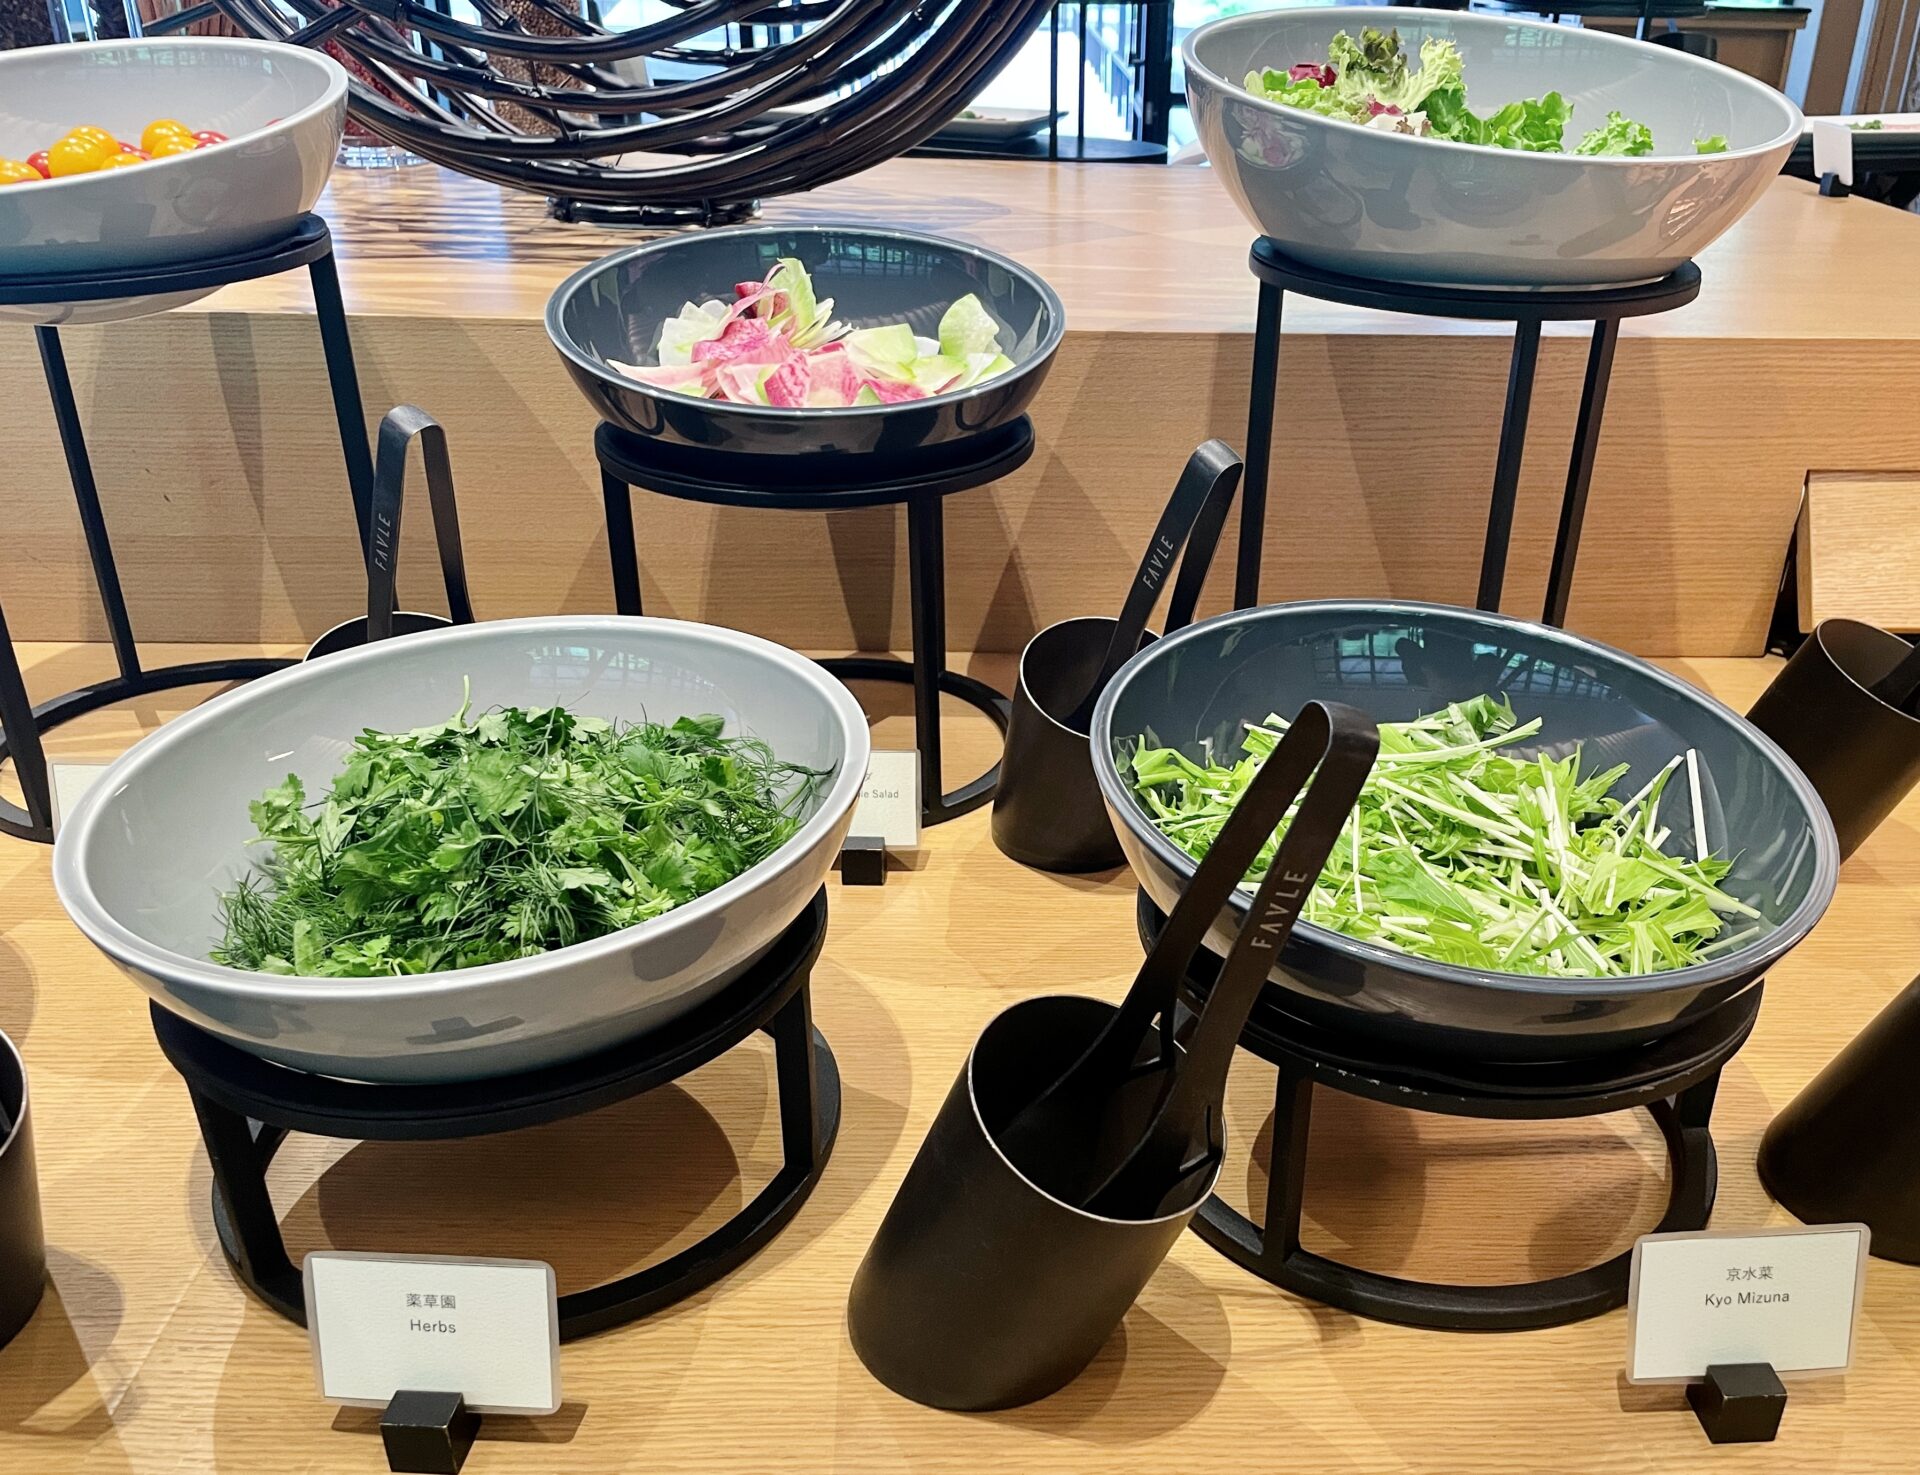 「ロク京都」朝食 サラダコーナー イチオシの薬草園